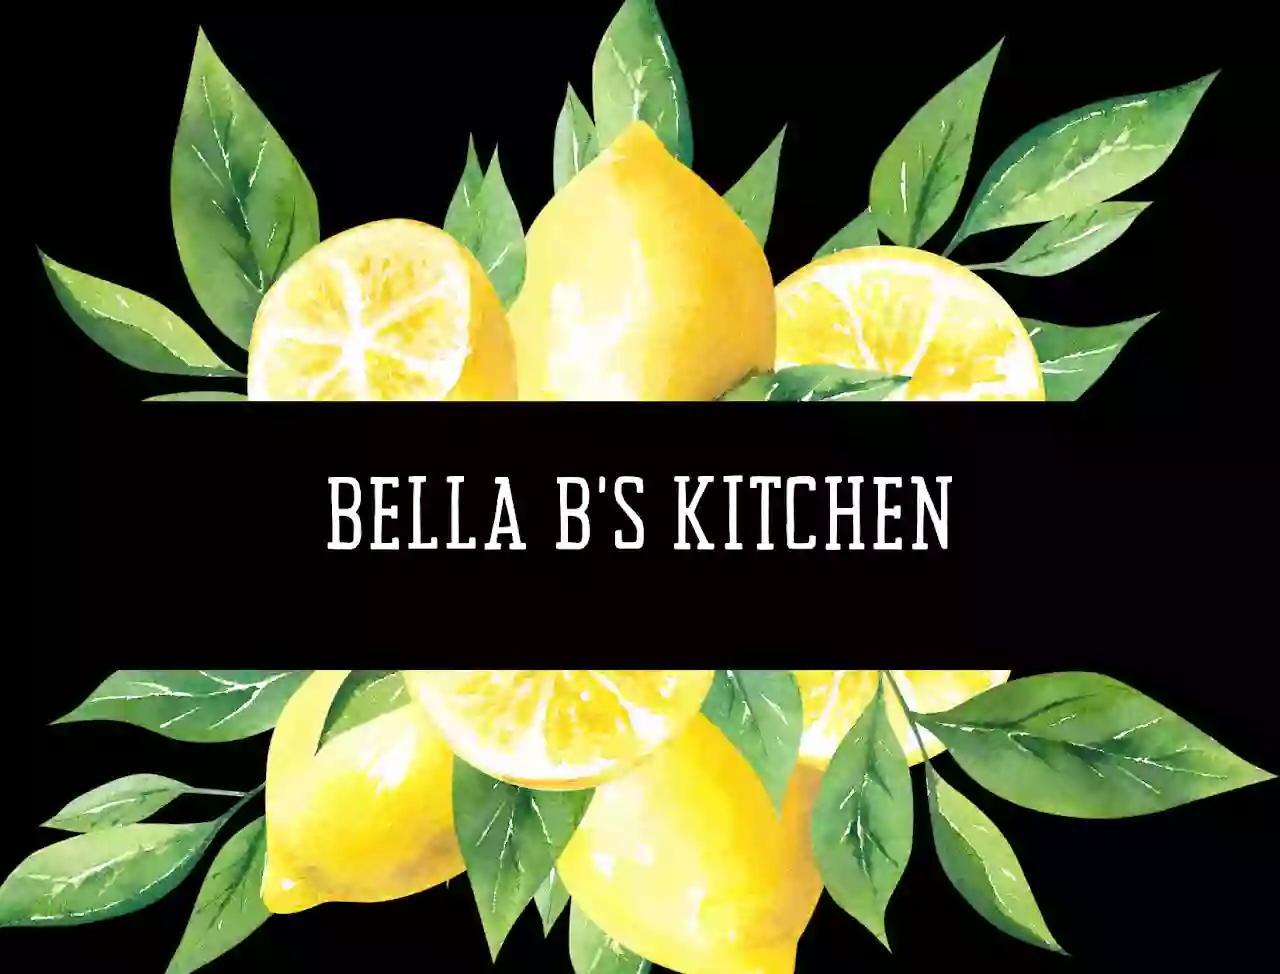 Bella B's Kitchen